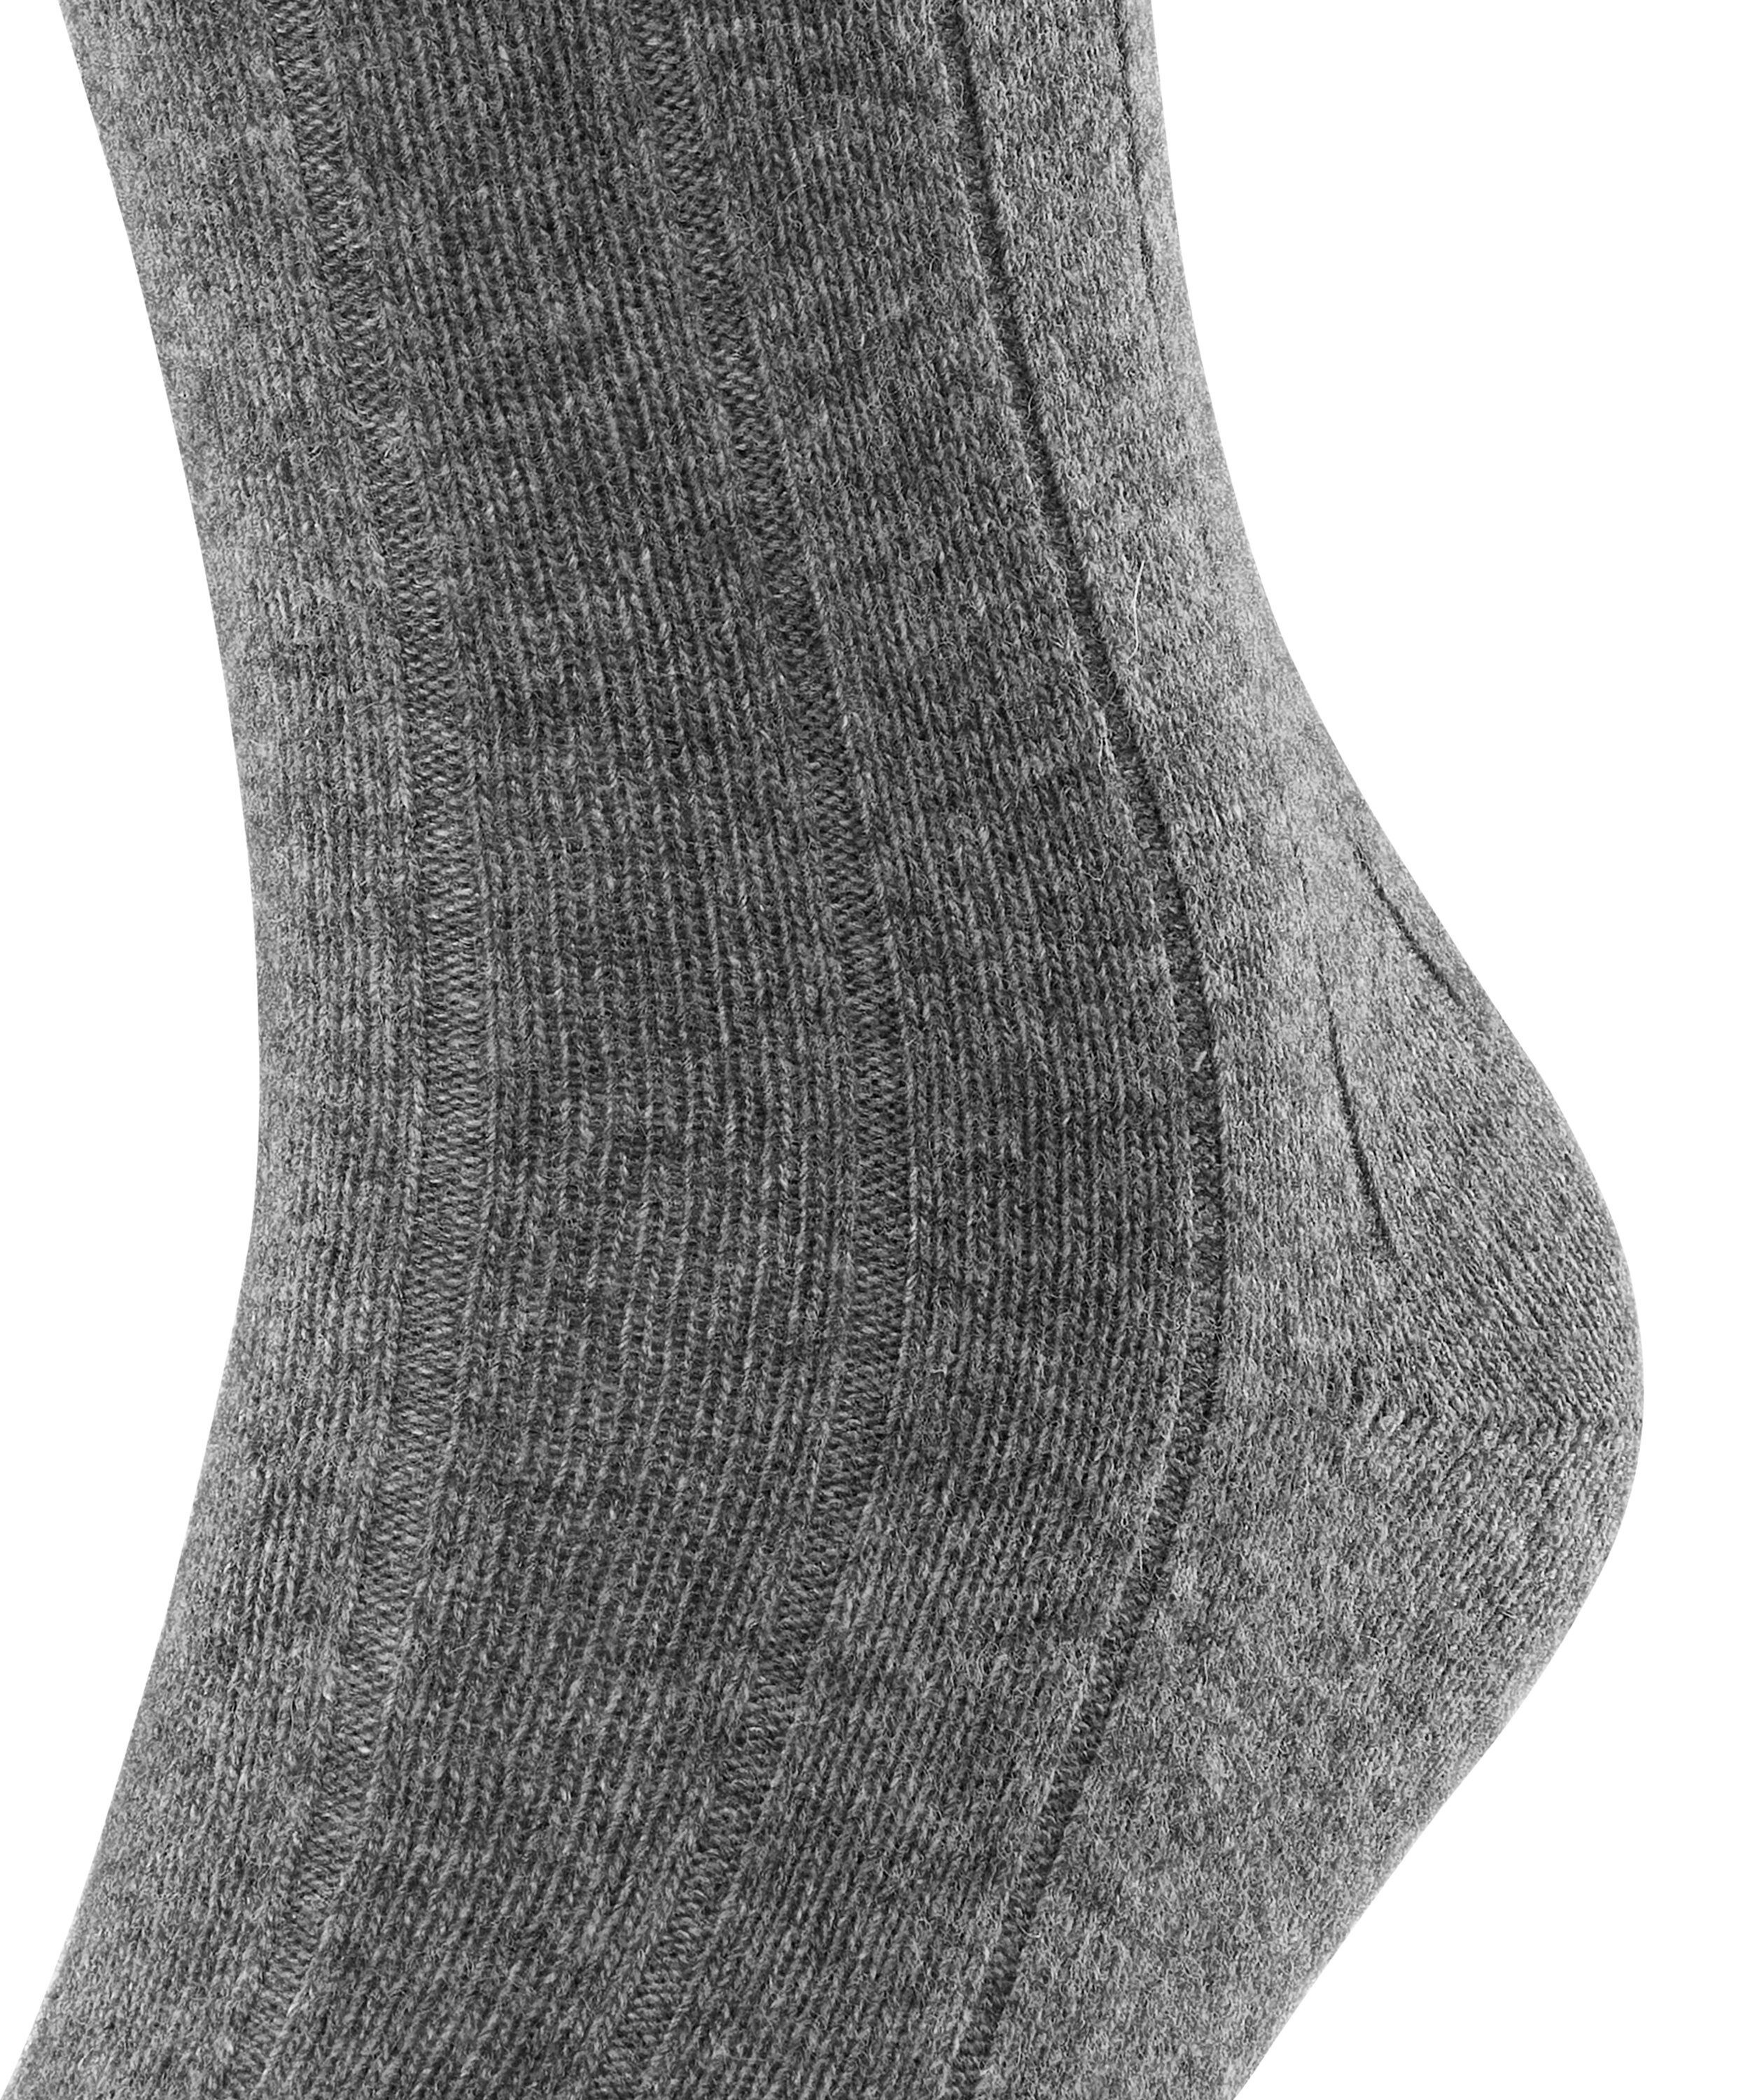 (3390) Rib light Lhasa (1-Paar) FALKE greymel. Socken